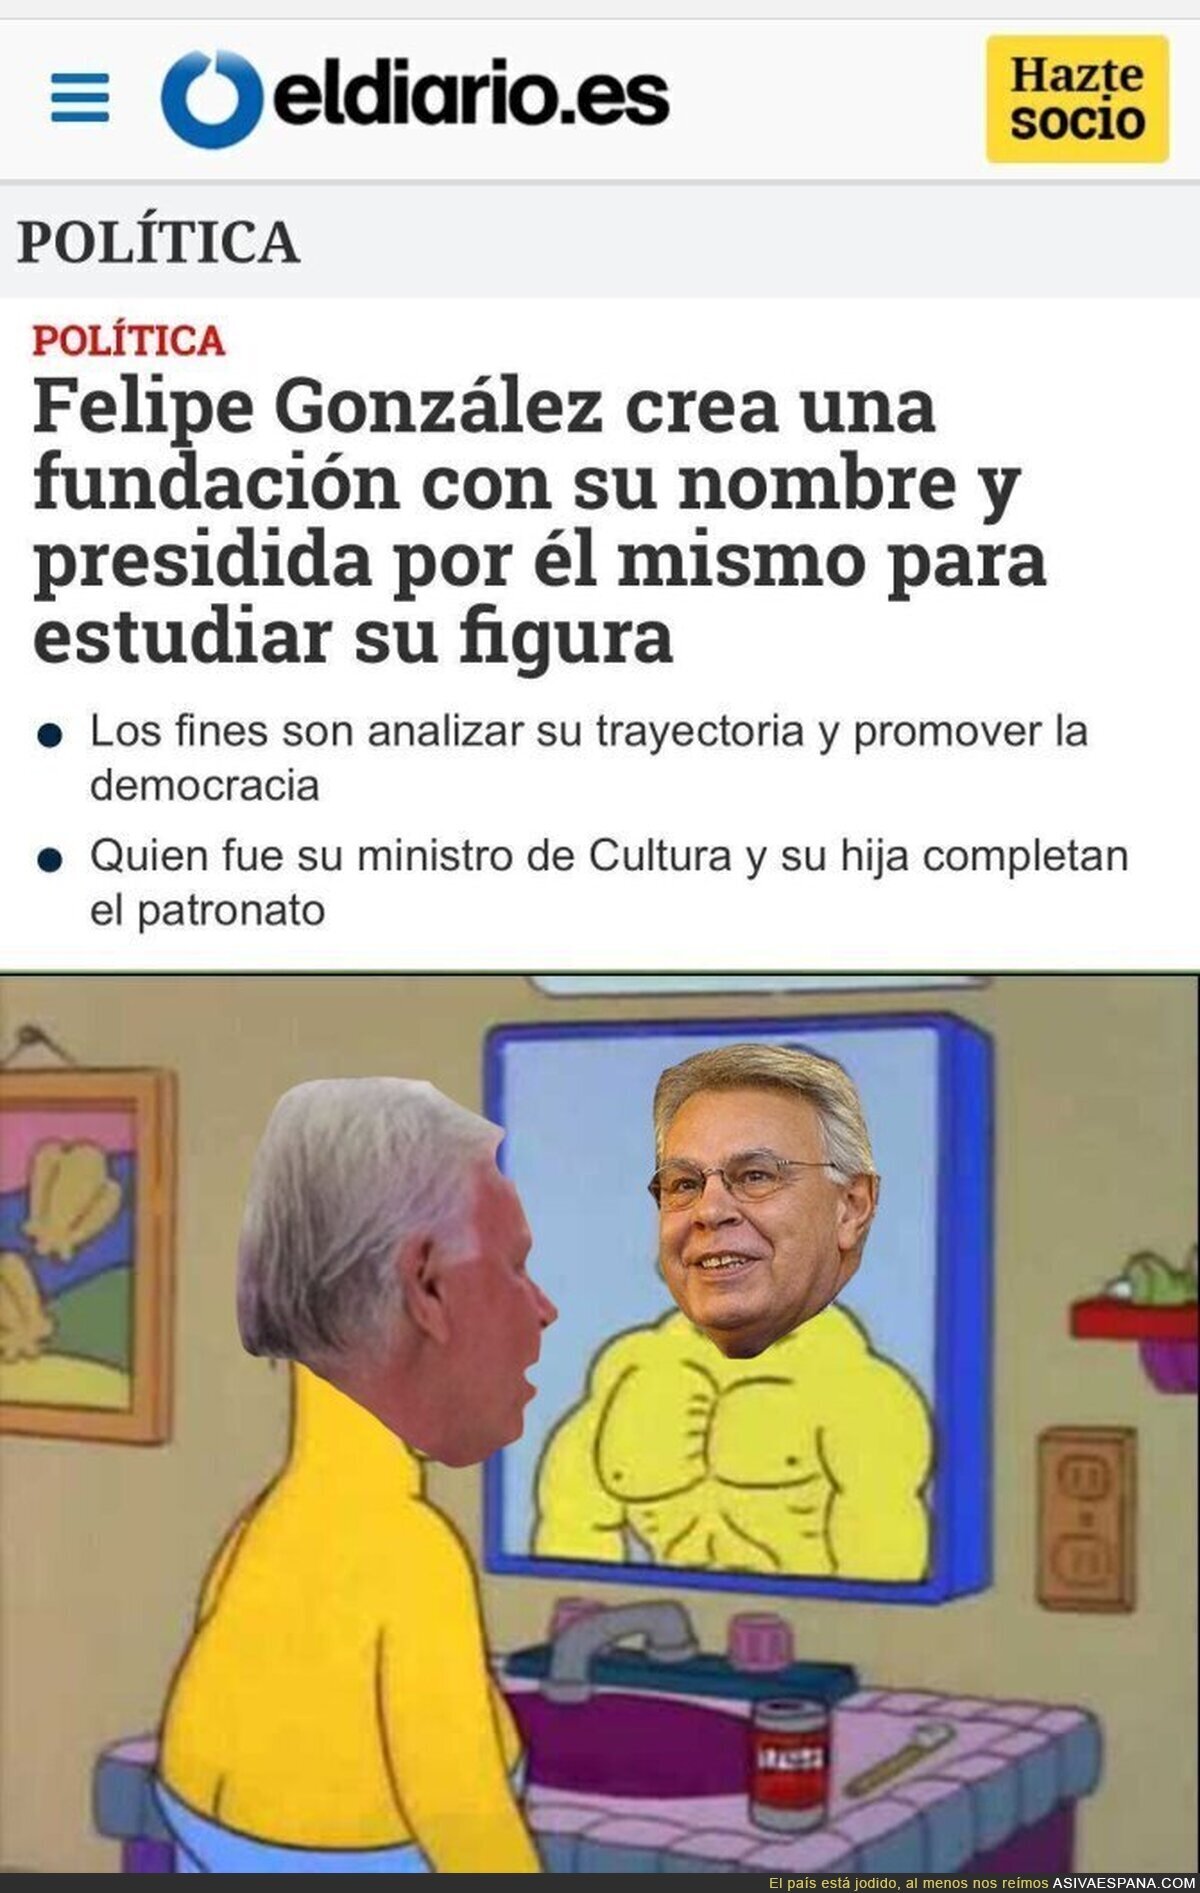 El ego de Felipe González